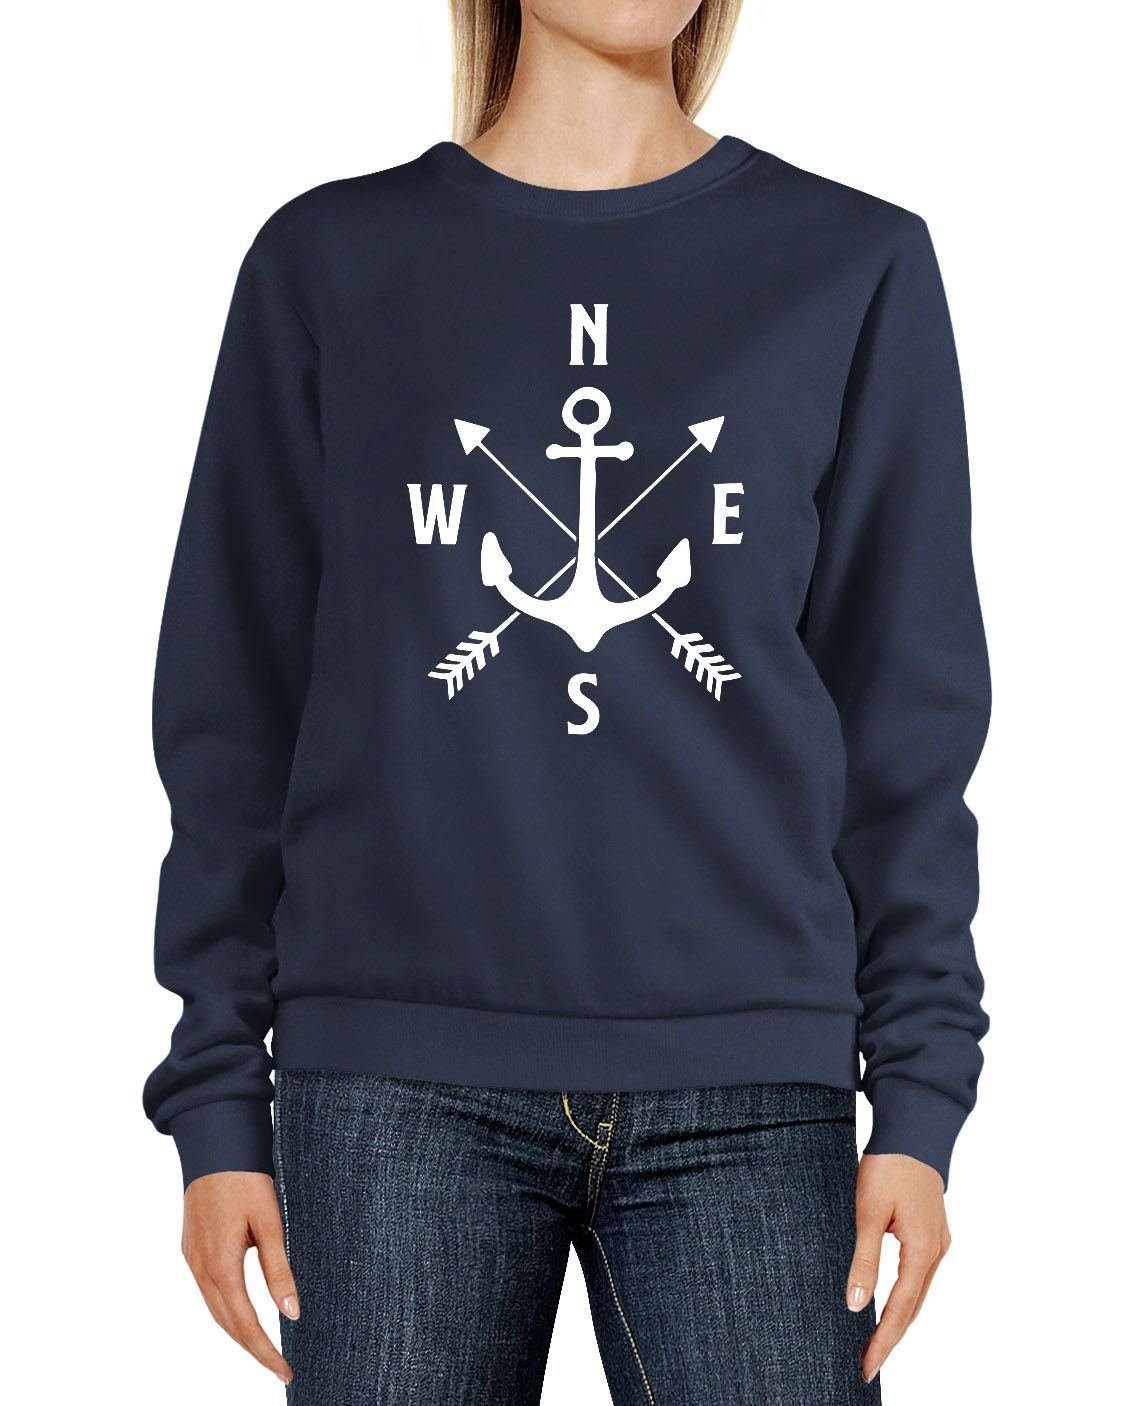 MoonWorks Sweatshirt »Sweatshirt Damen Aufdruck Motiv Anker Kompass Pfeile  Rundhals-Pullover Pulli Sweater Moonworks®« online kaufen | OTTO